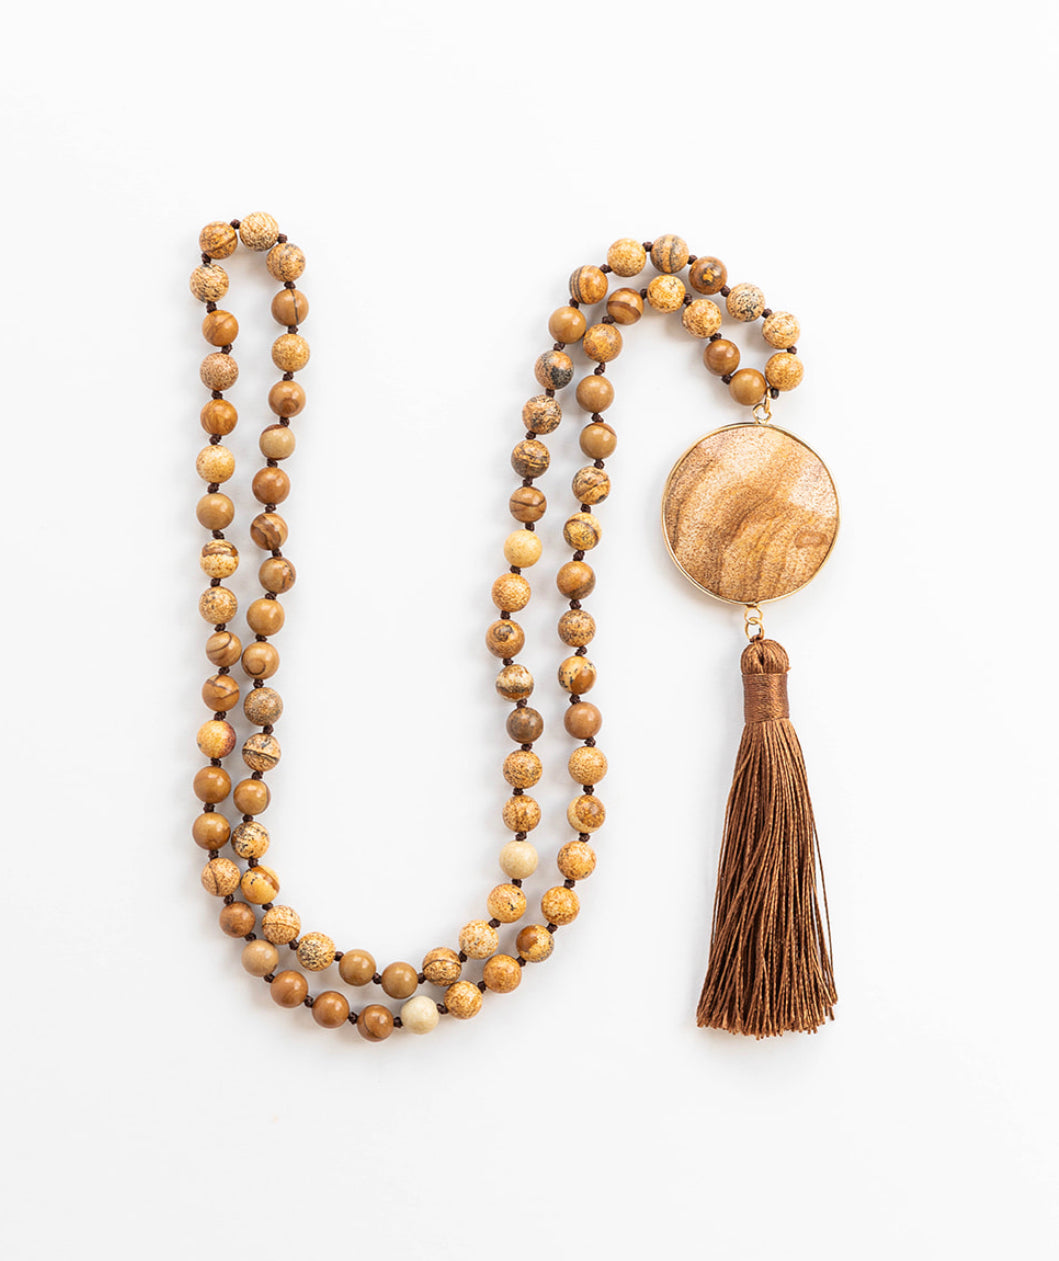 Tassel Necklaces - Tribal Desert Jasper Stone | Boho & Mala